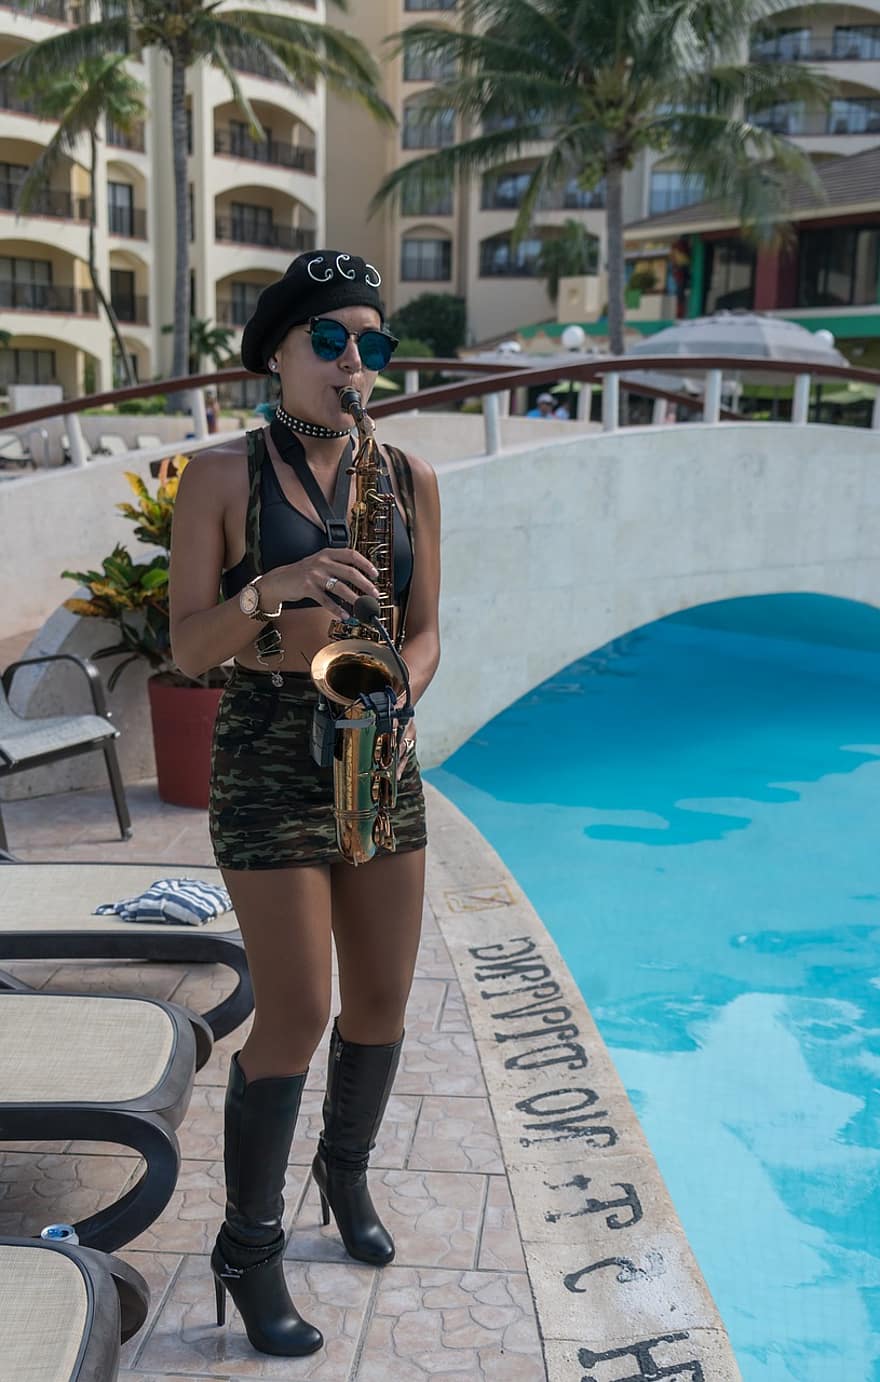 saxofonista, música, actuación, junto a la piscina, partido, gente